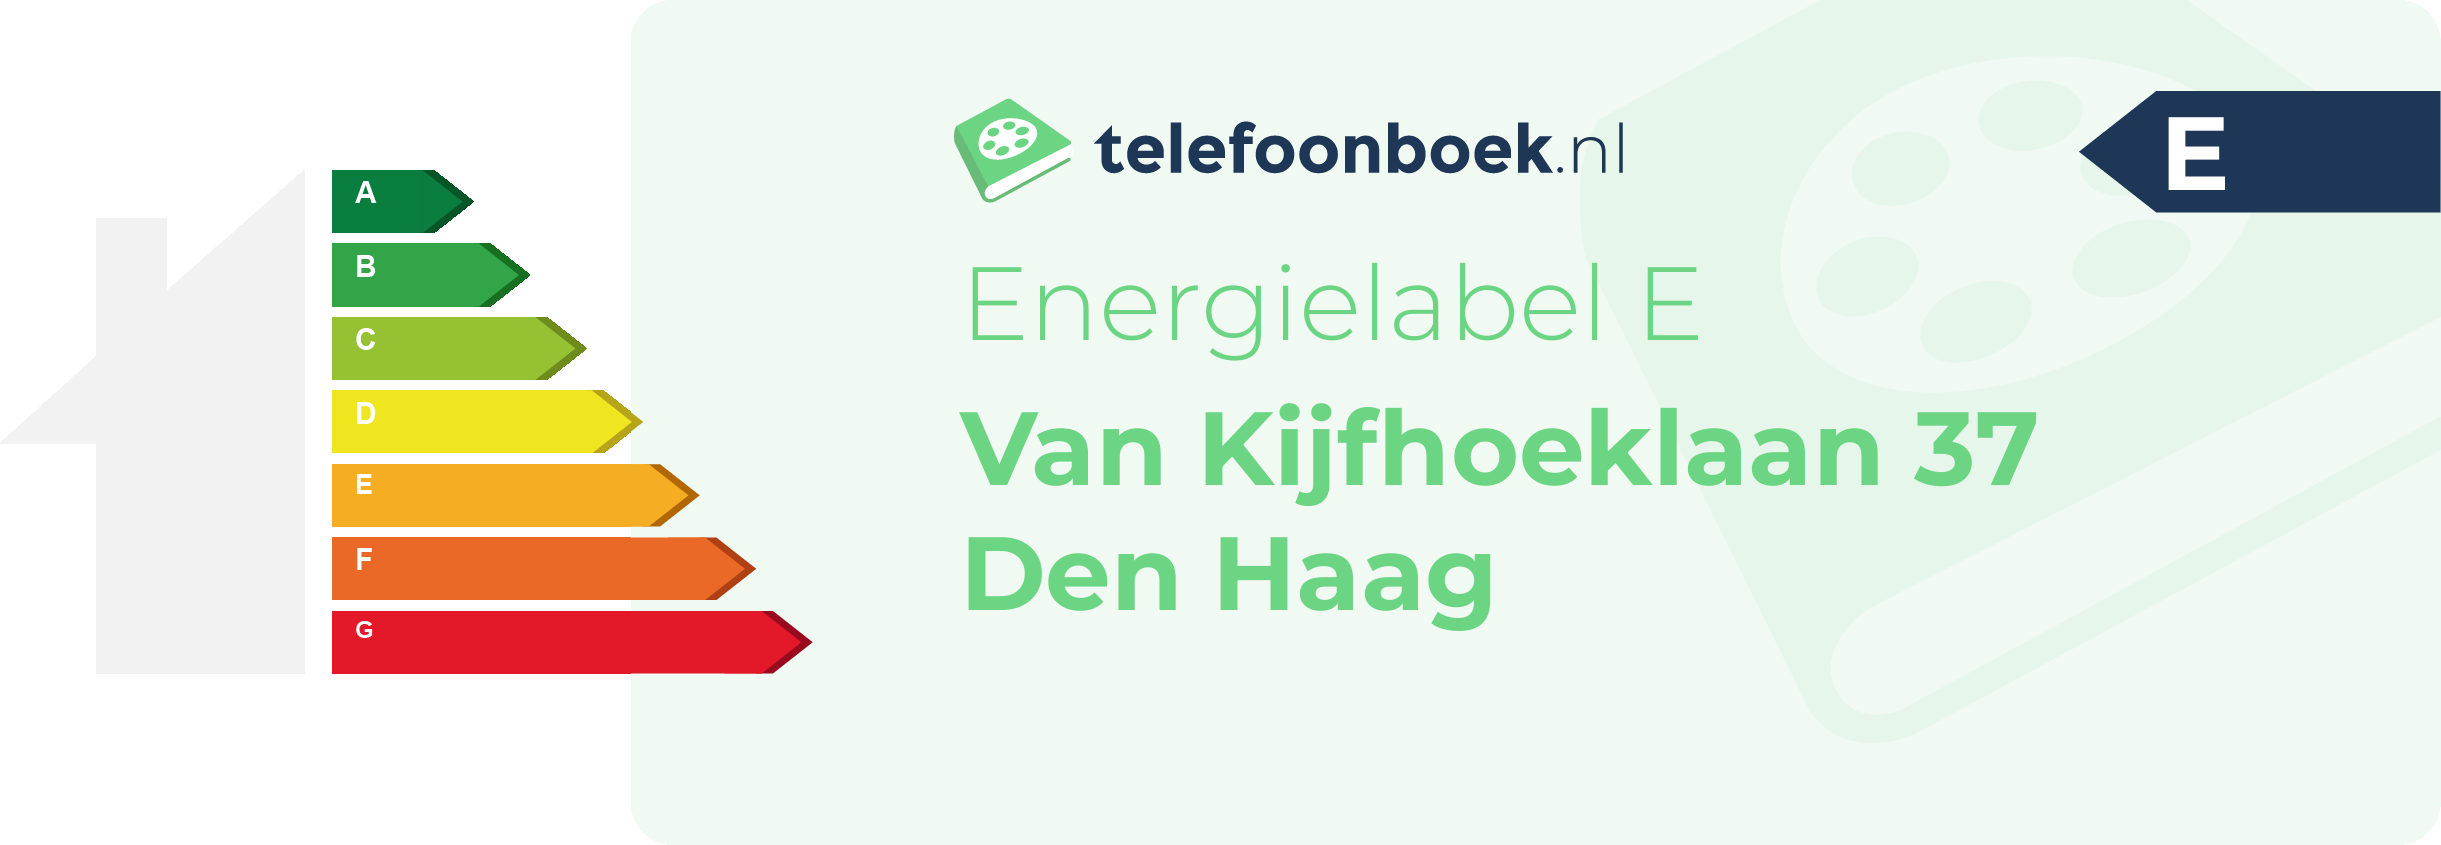 Energielabel Van Kijfhoeklaan 37 Den Haag